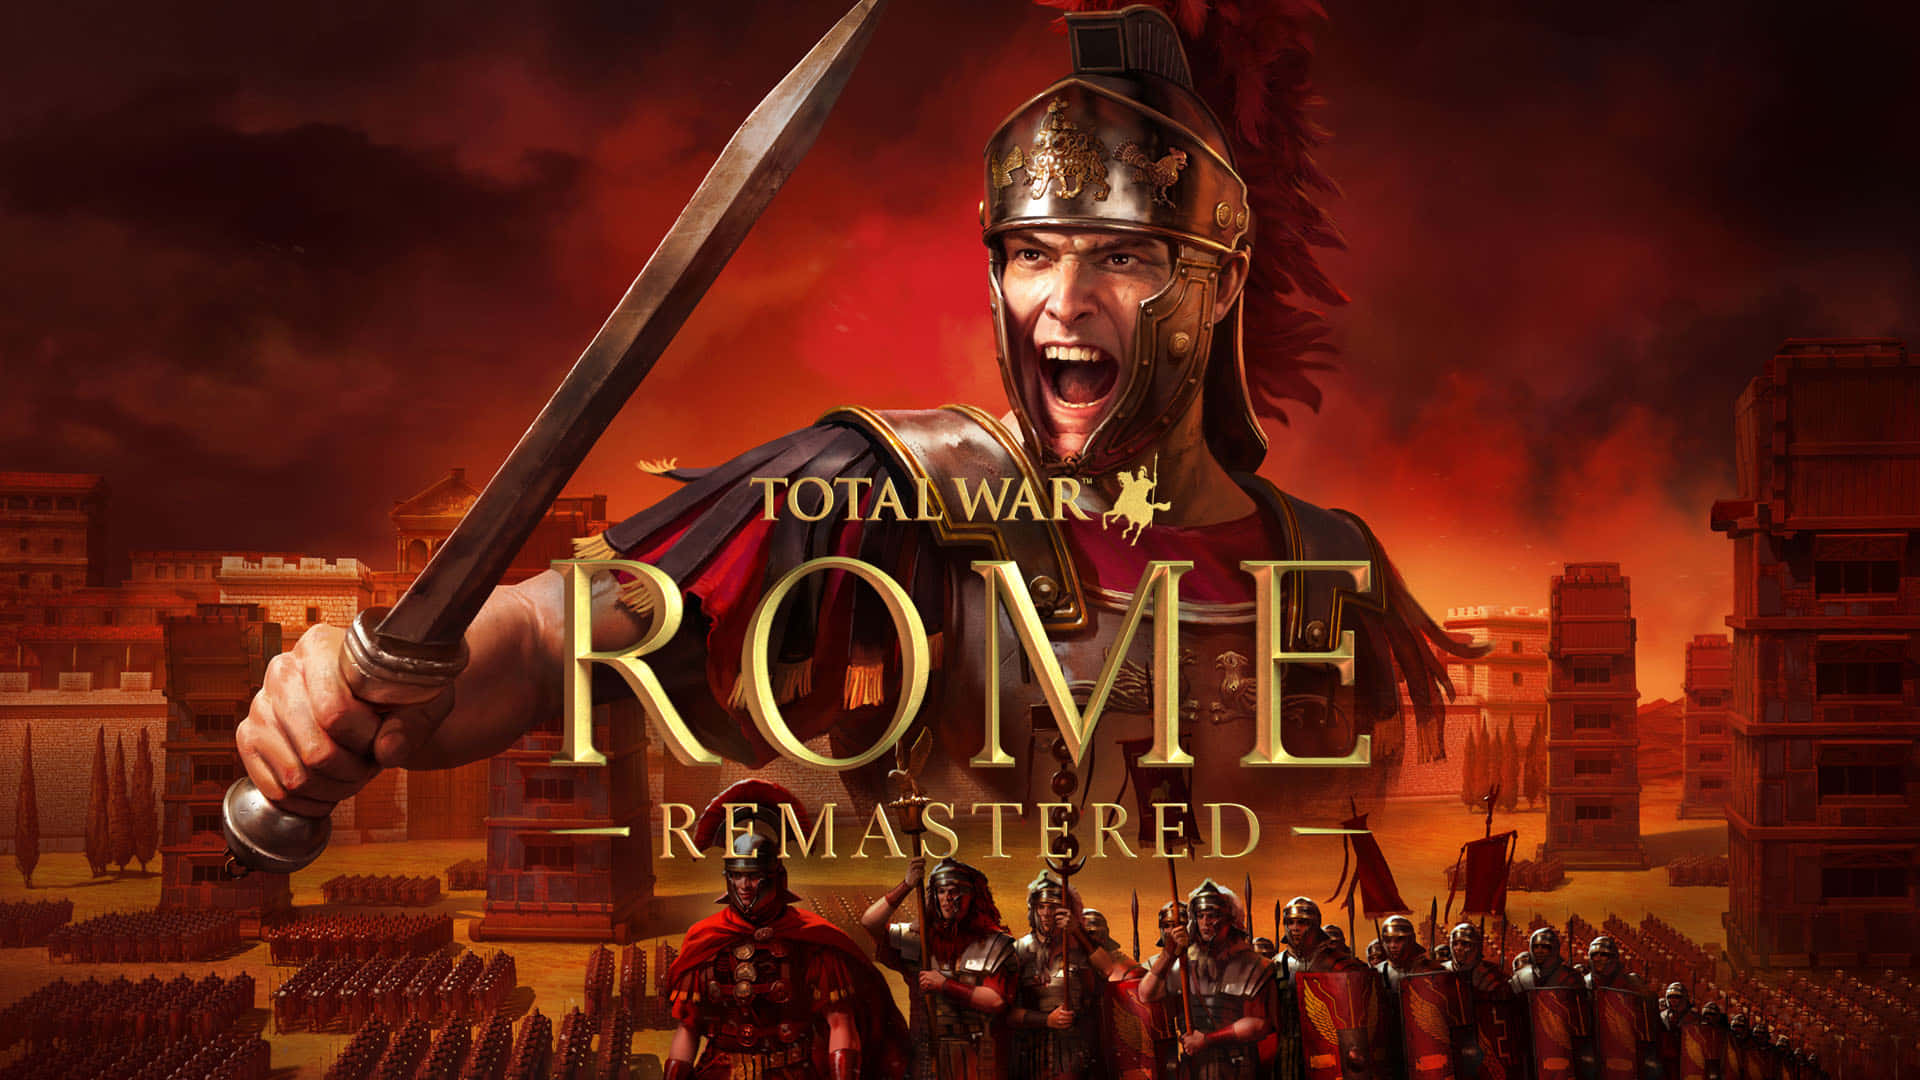 Dominate Rome in Best Total War: Rome 2!